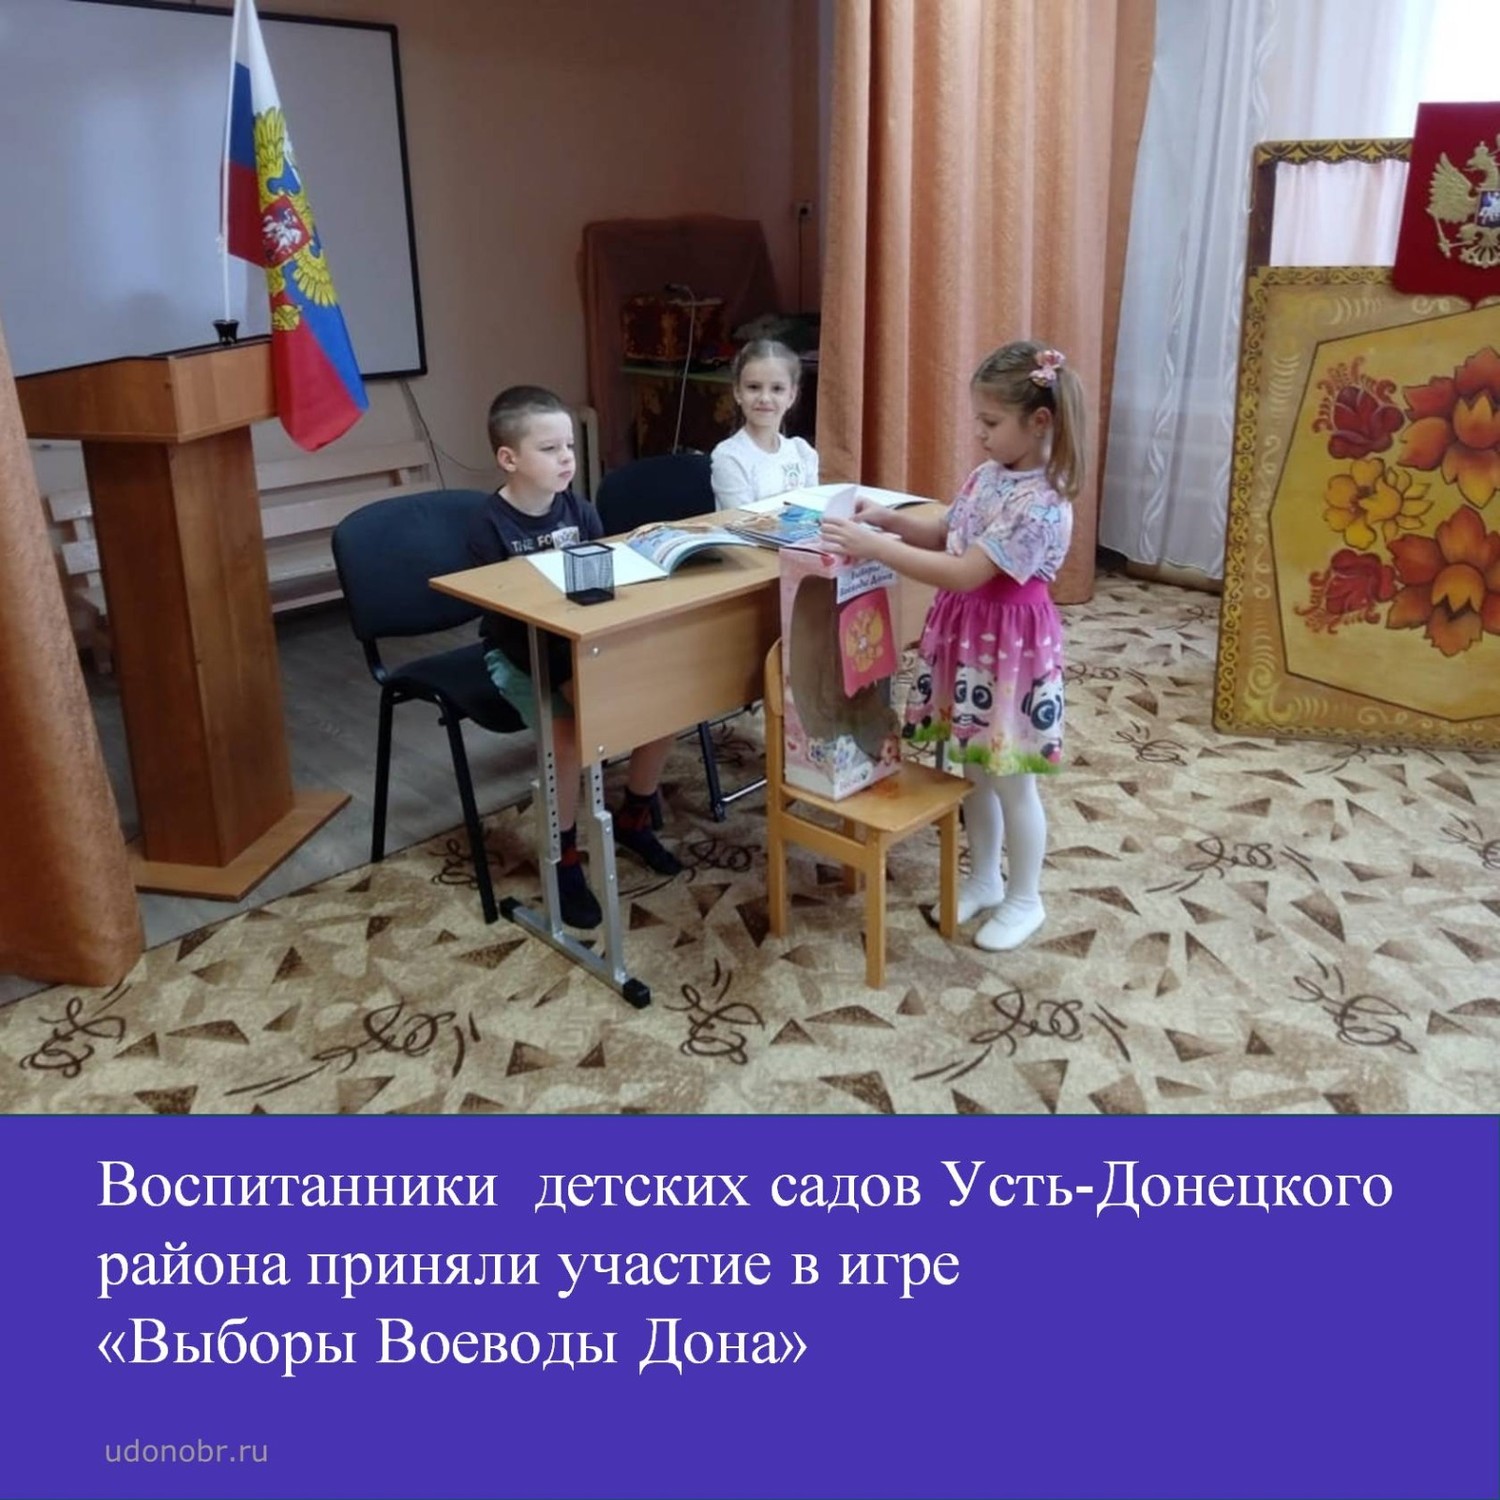 Ребята из детских садов Усть-Донецкого района приняли участие в игре 